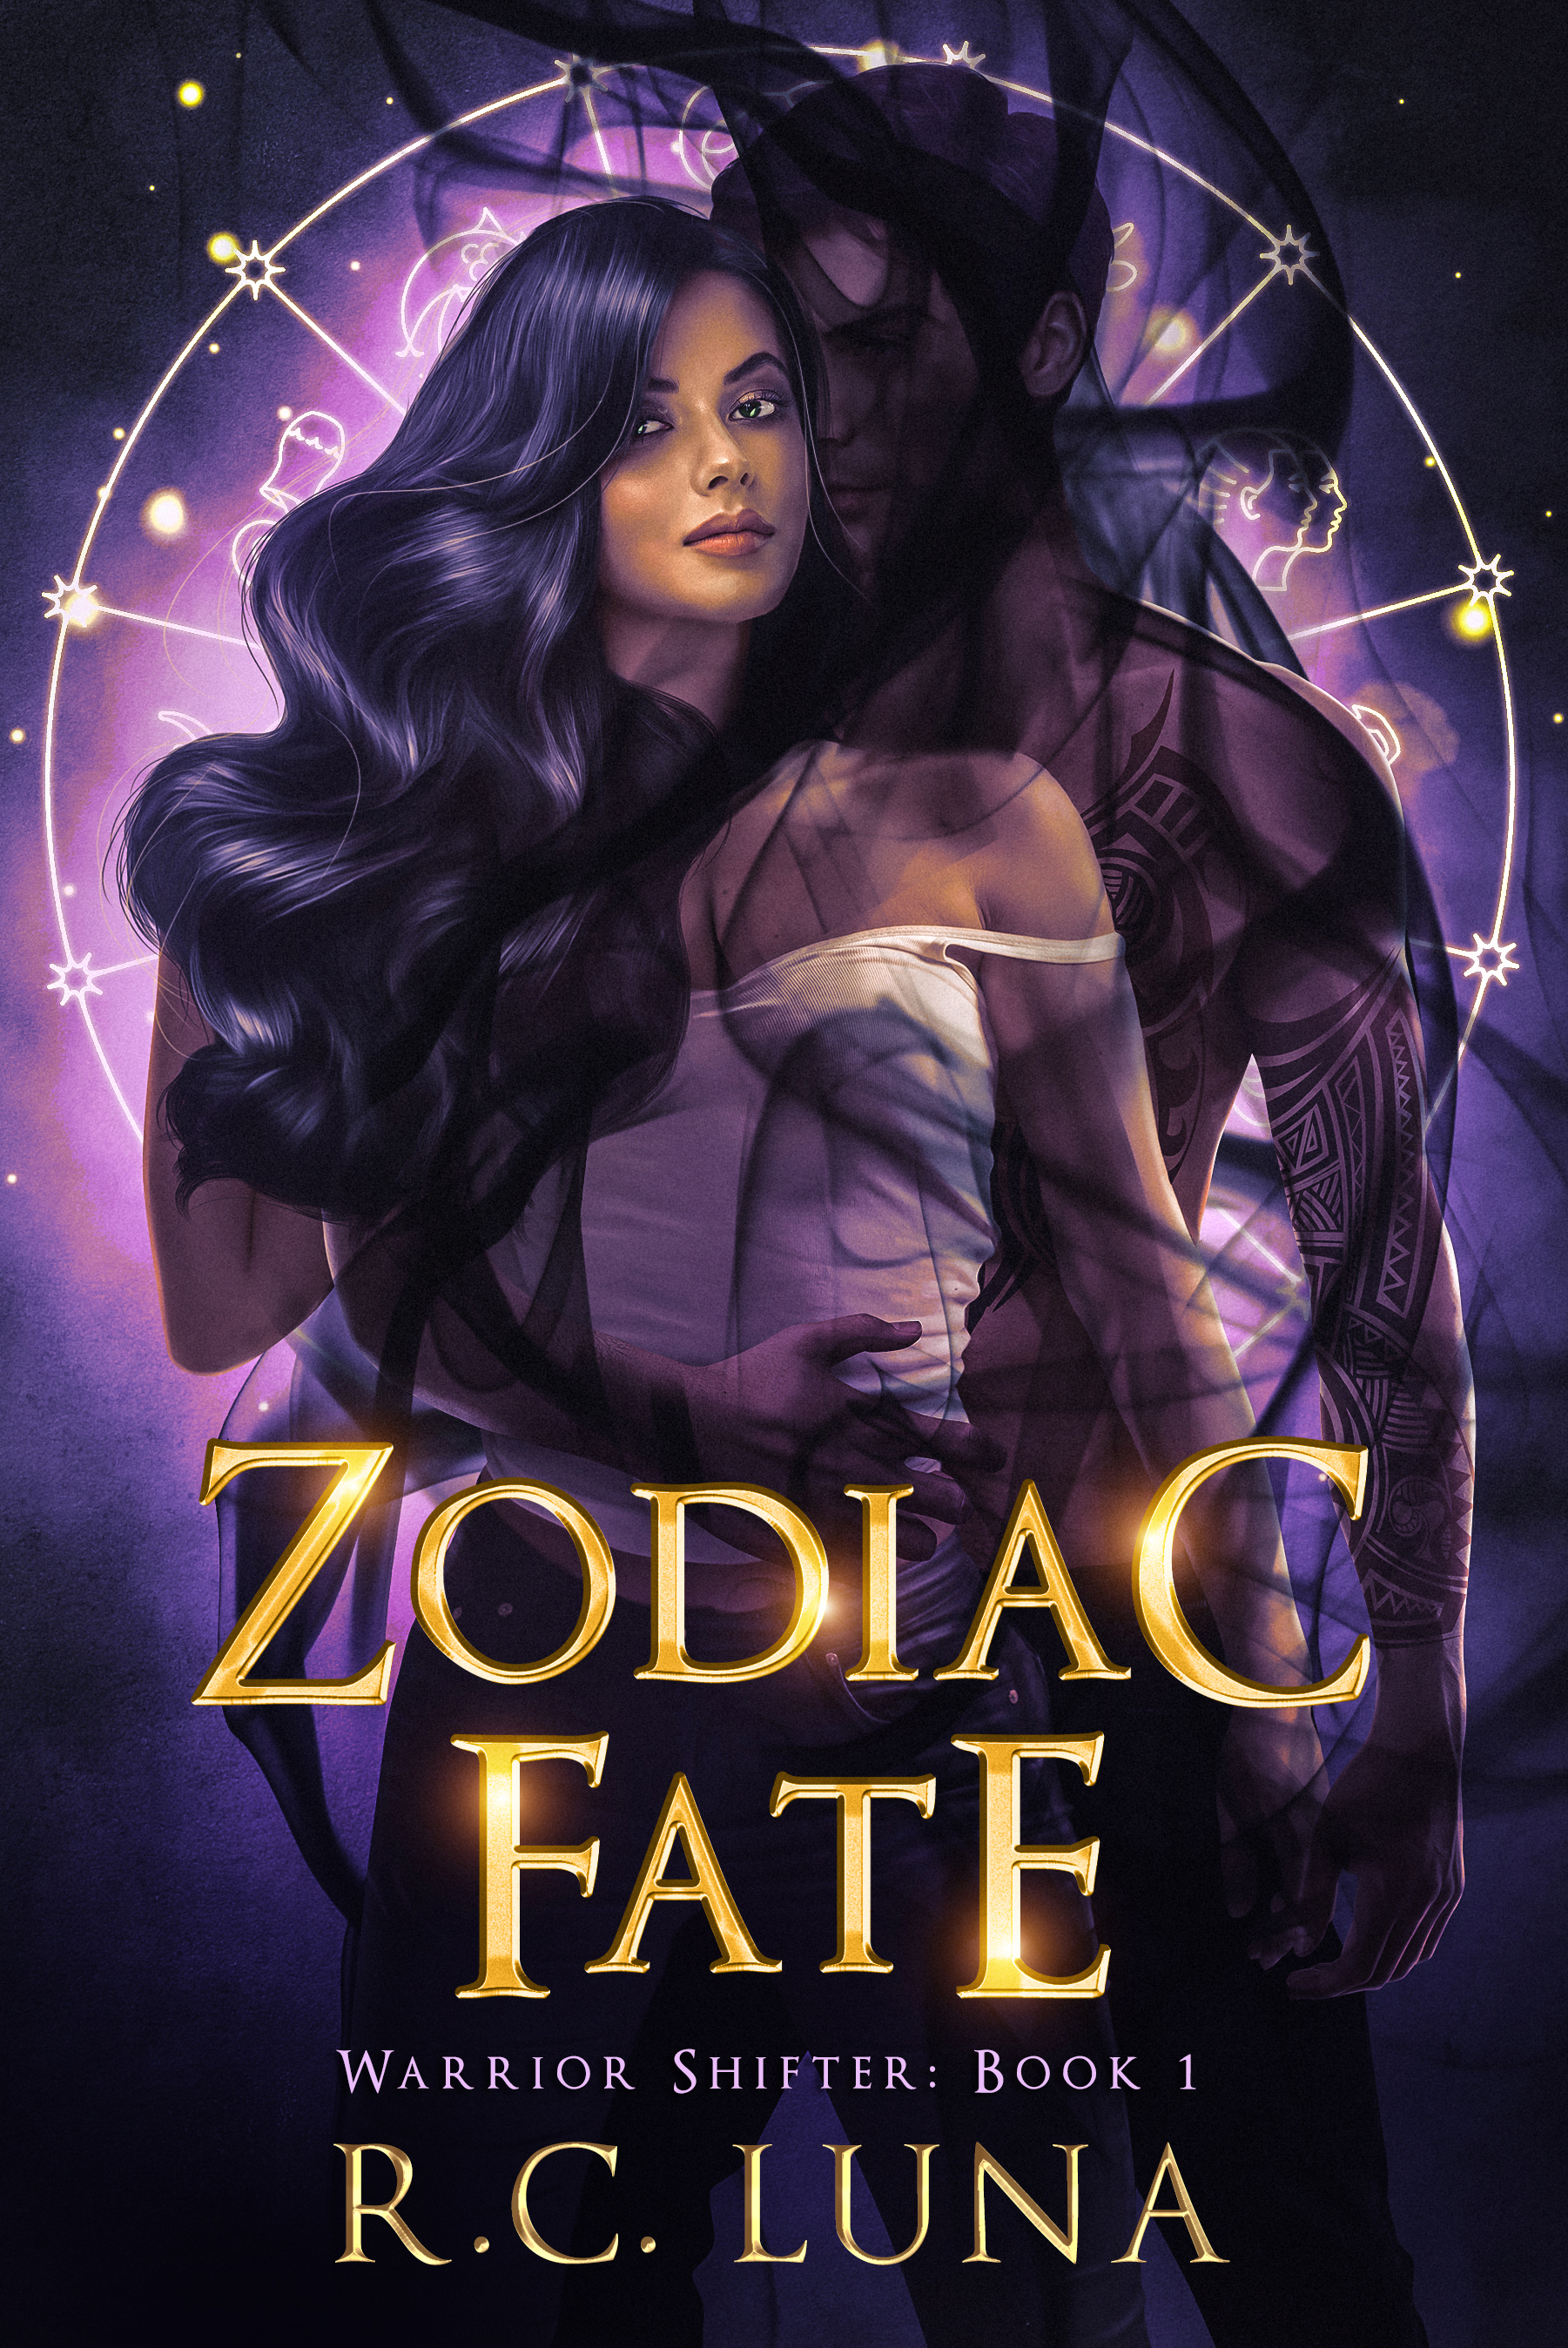 Cover for Zodiac Fate